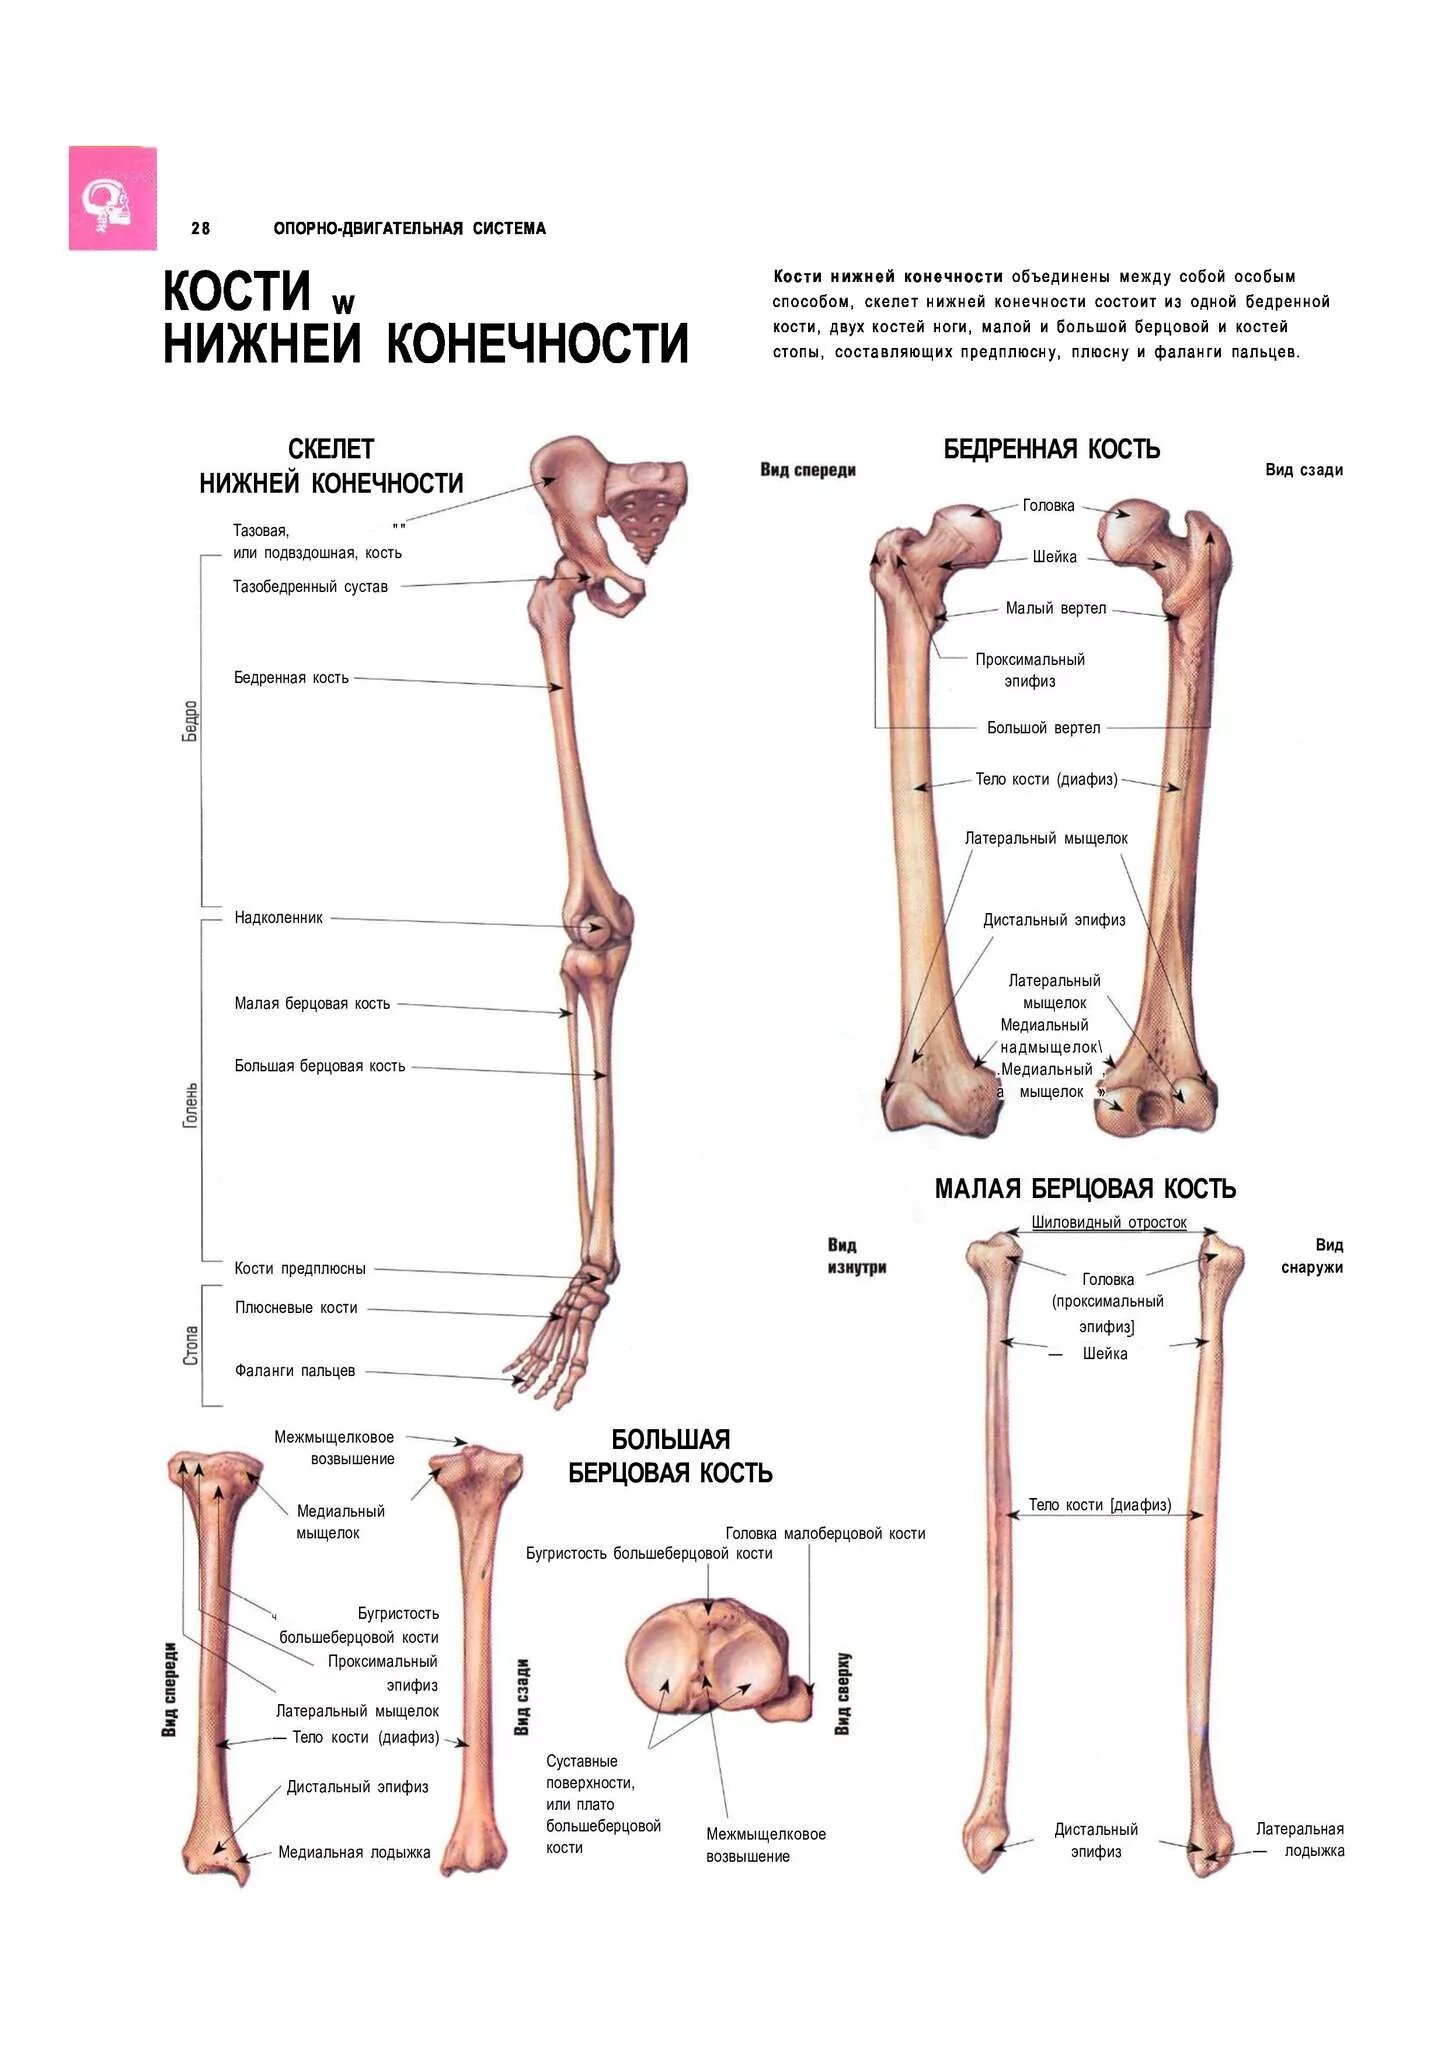 Тема нижние конечности. Кости нижних конечностей человека анатомия на латыни. Малая берцовая кость нижней конечности. Строение костей нижней конечности. Скелет нижней конечности на латинском.